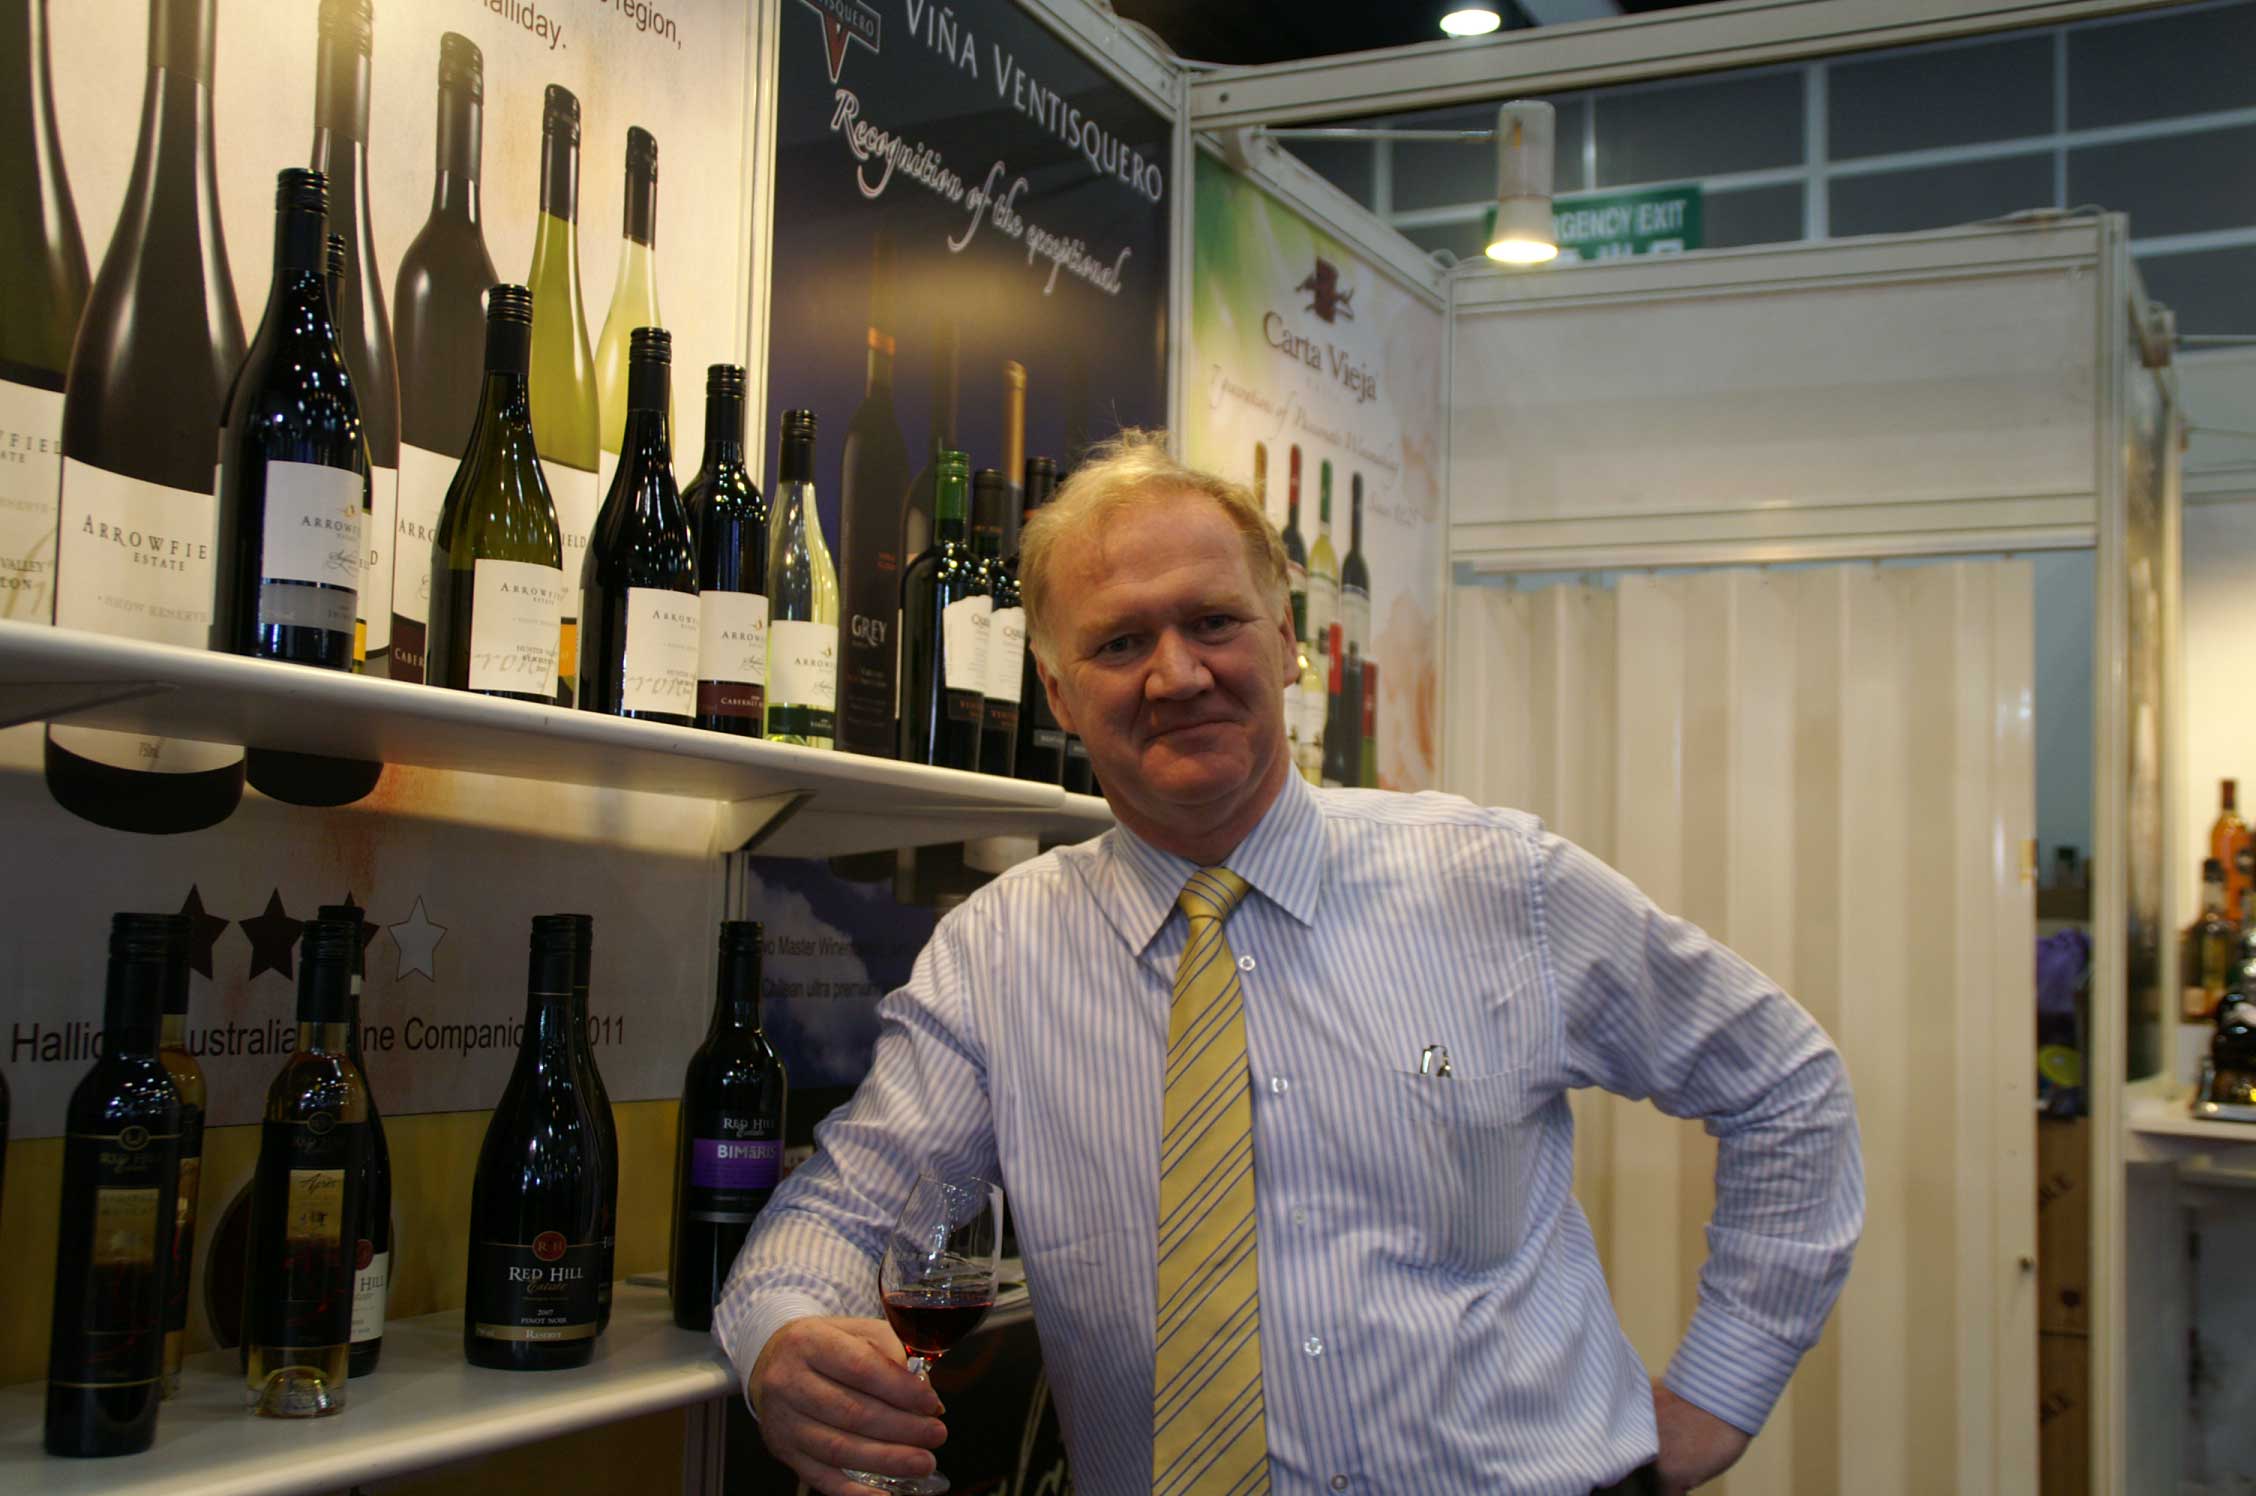 Ken Waldron posing in front of wine shelf